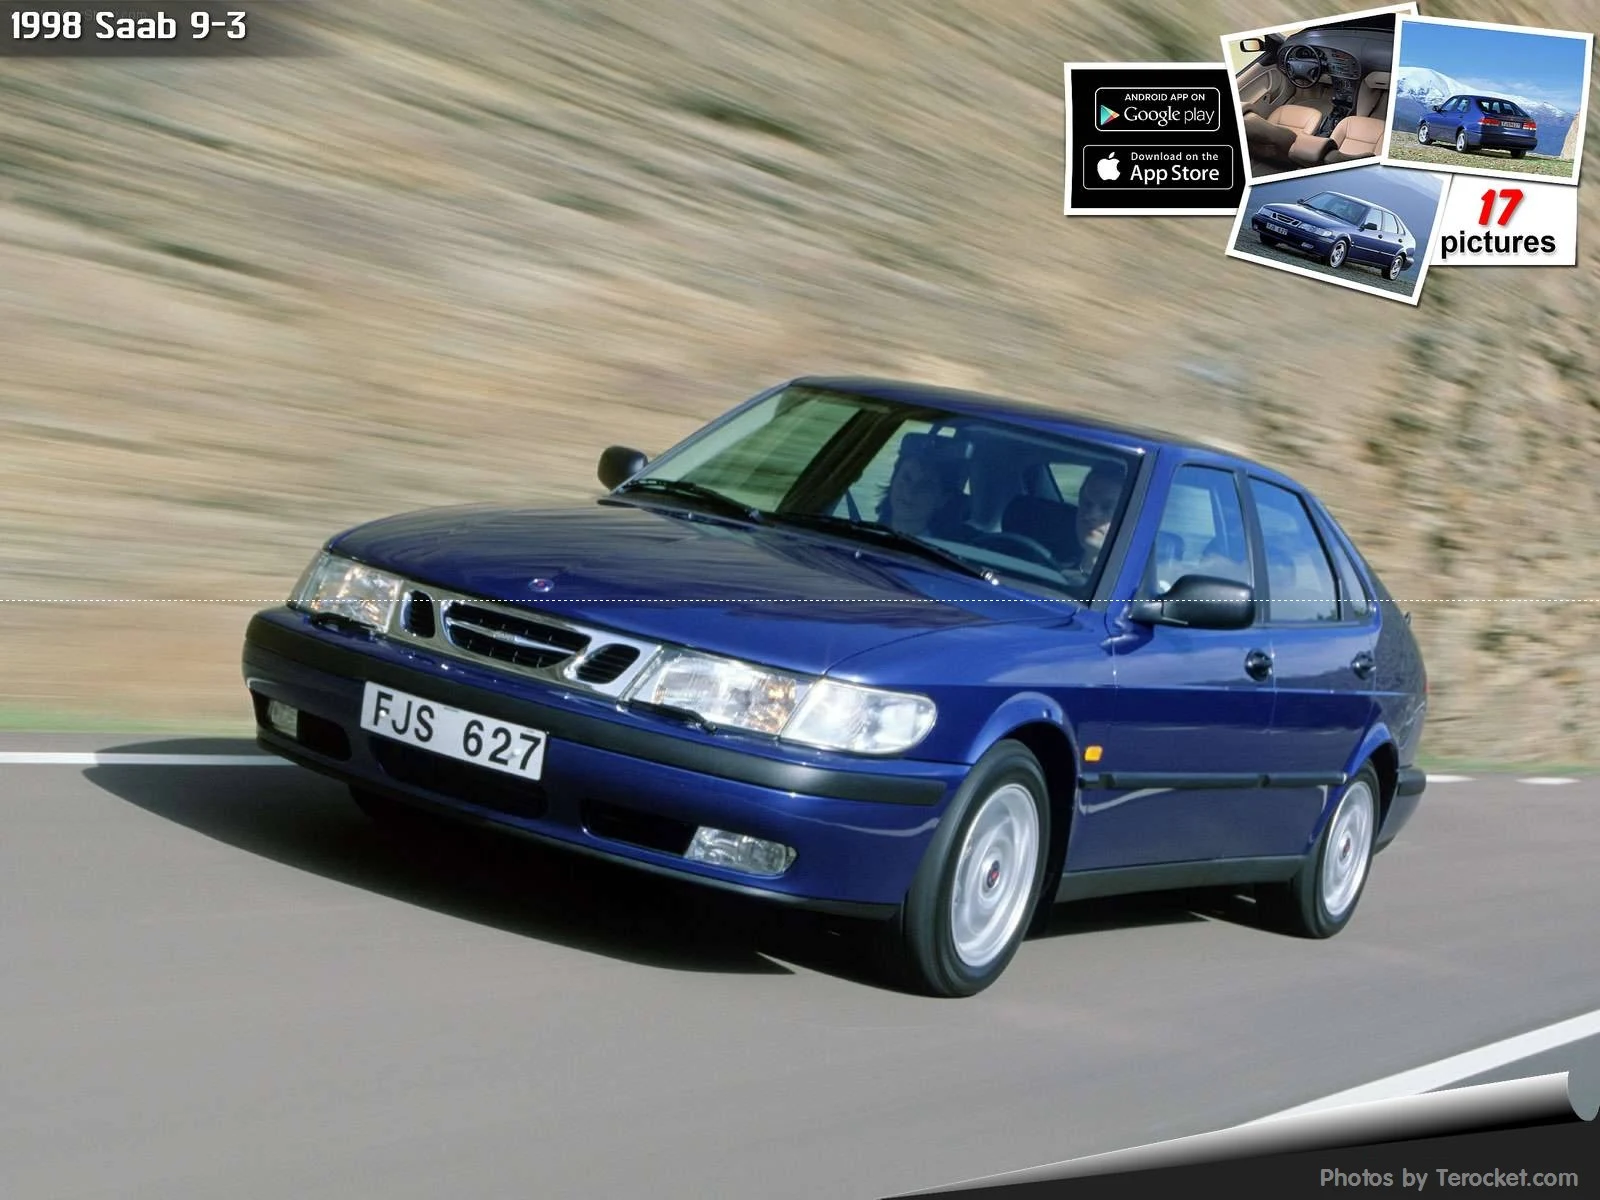 Hình ảnh xe ô tô Saab 9-3 1998 & nội ngoại thất